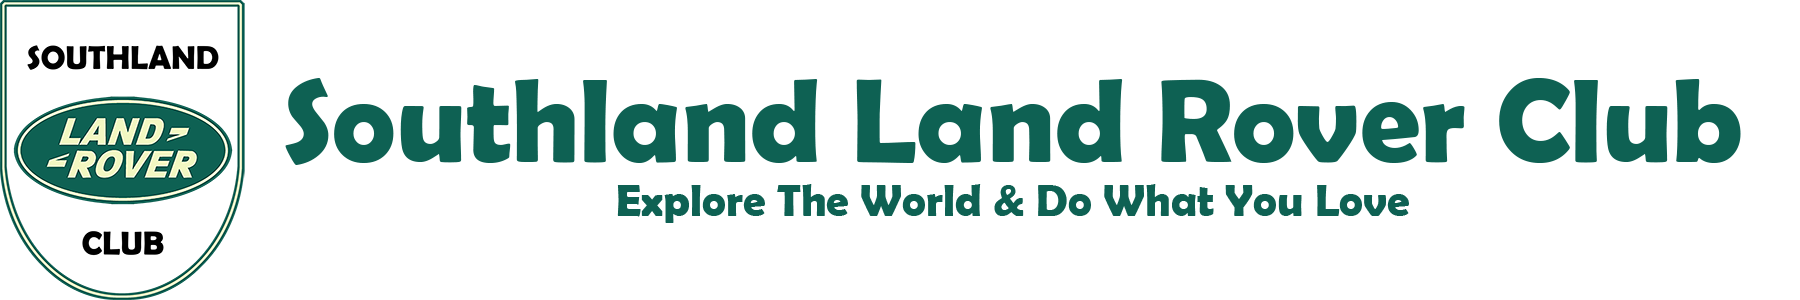 Southland Landrover Club